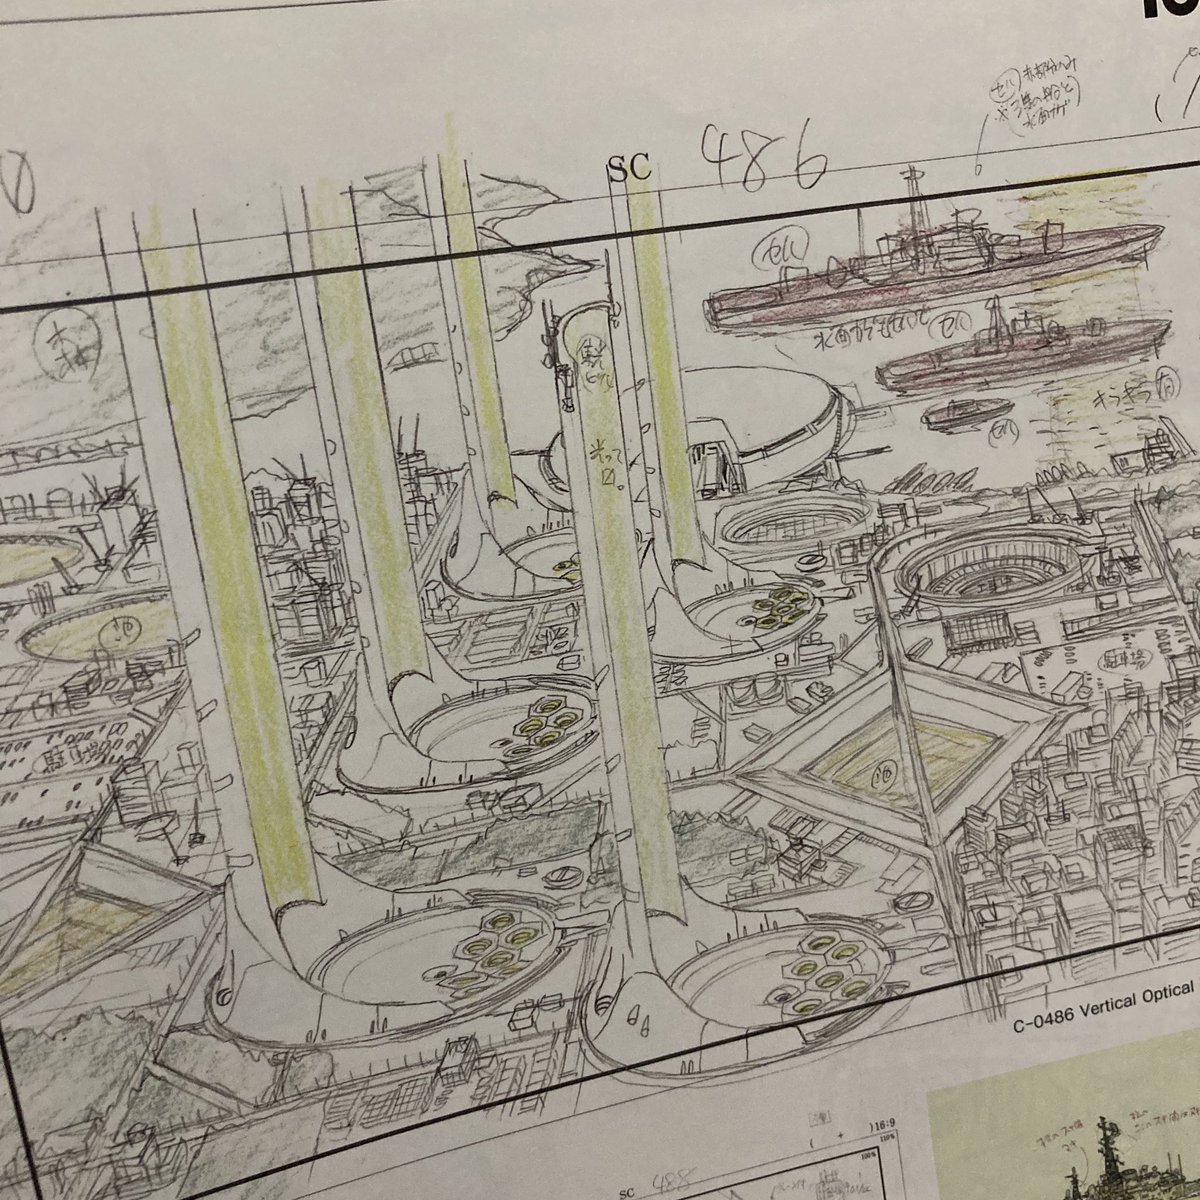 「あなたが守った街」は庵野監督が膨大にレイアウトやビルを描いてます。膨大に。

#ヱヴァ序 
#金曜ロードショー 
#3週連続エヴァンゲリオン 